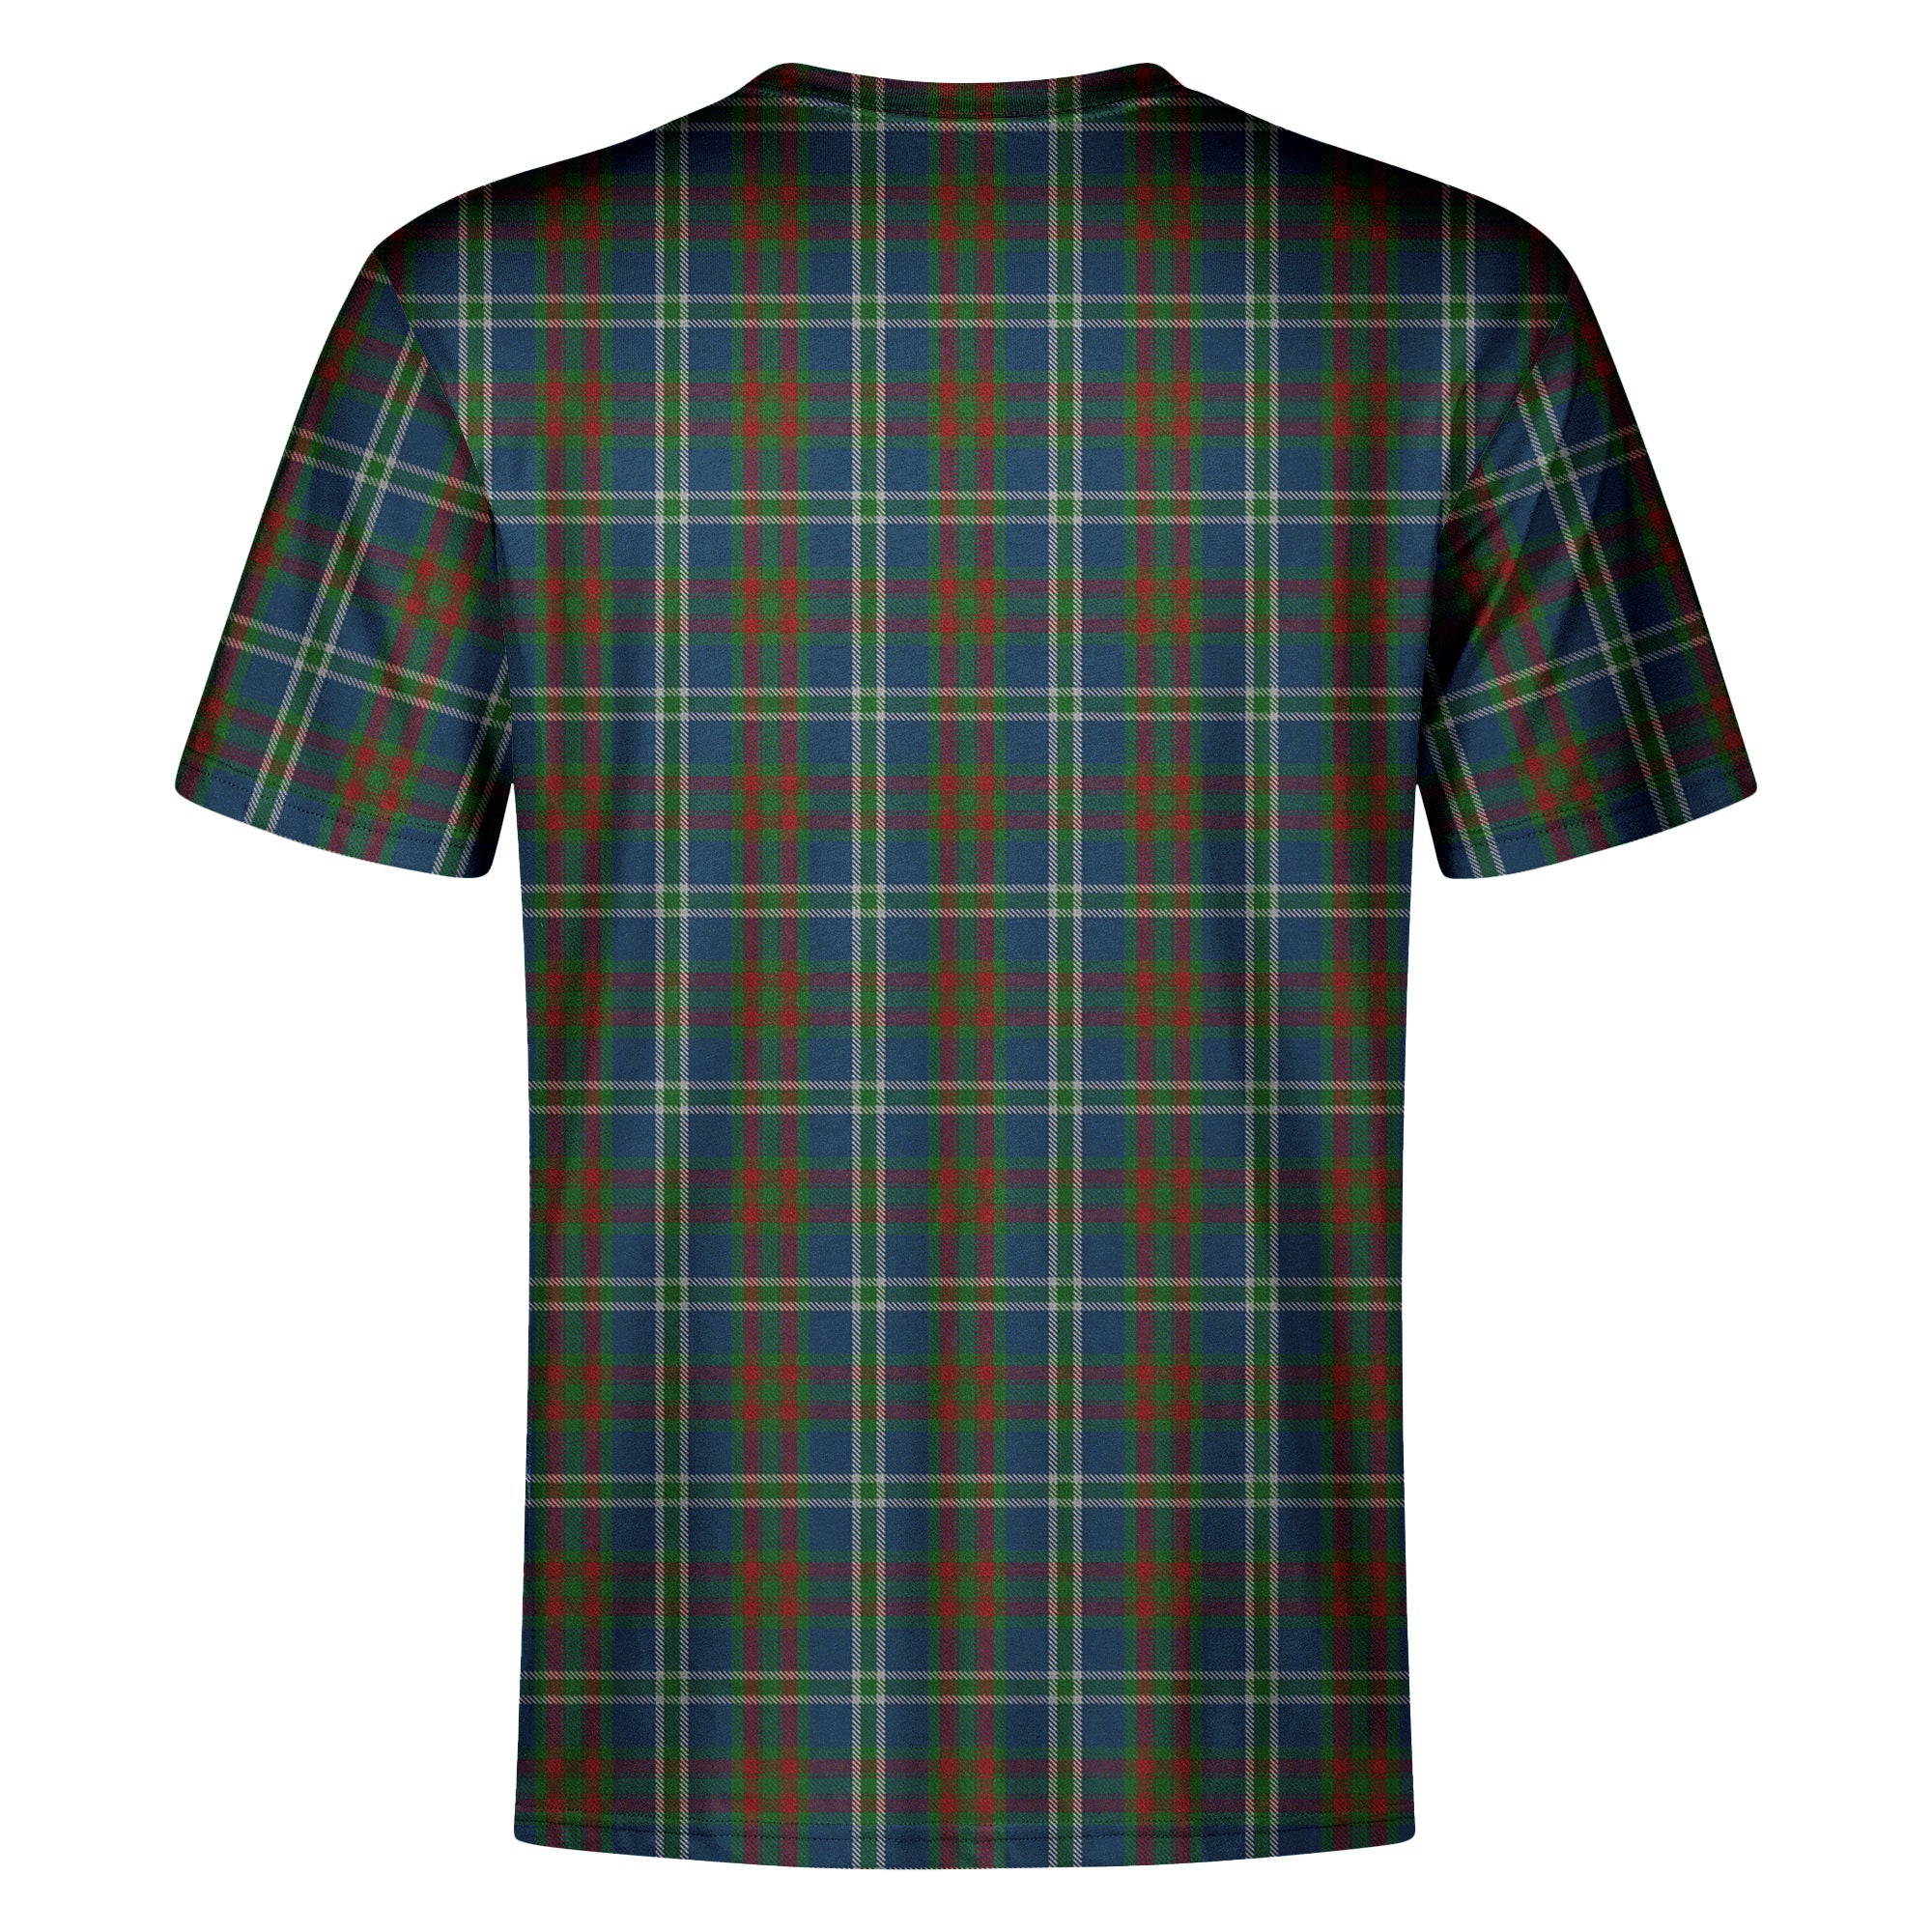 Cathcart Tartan Crest T-shirt